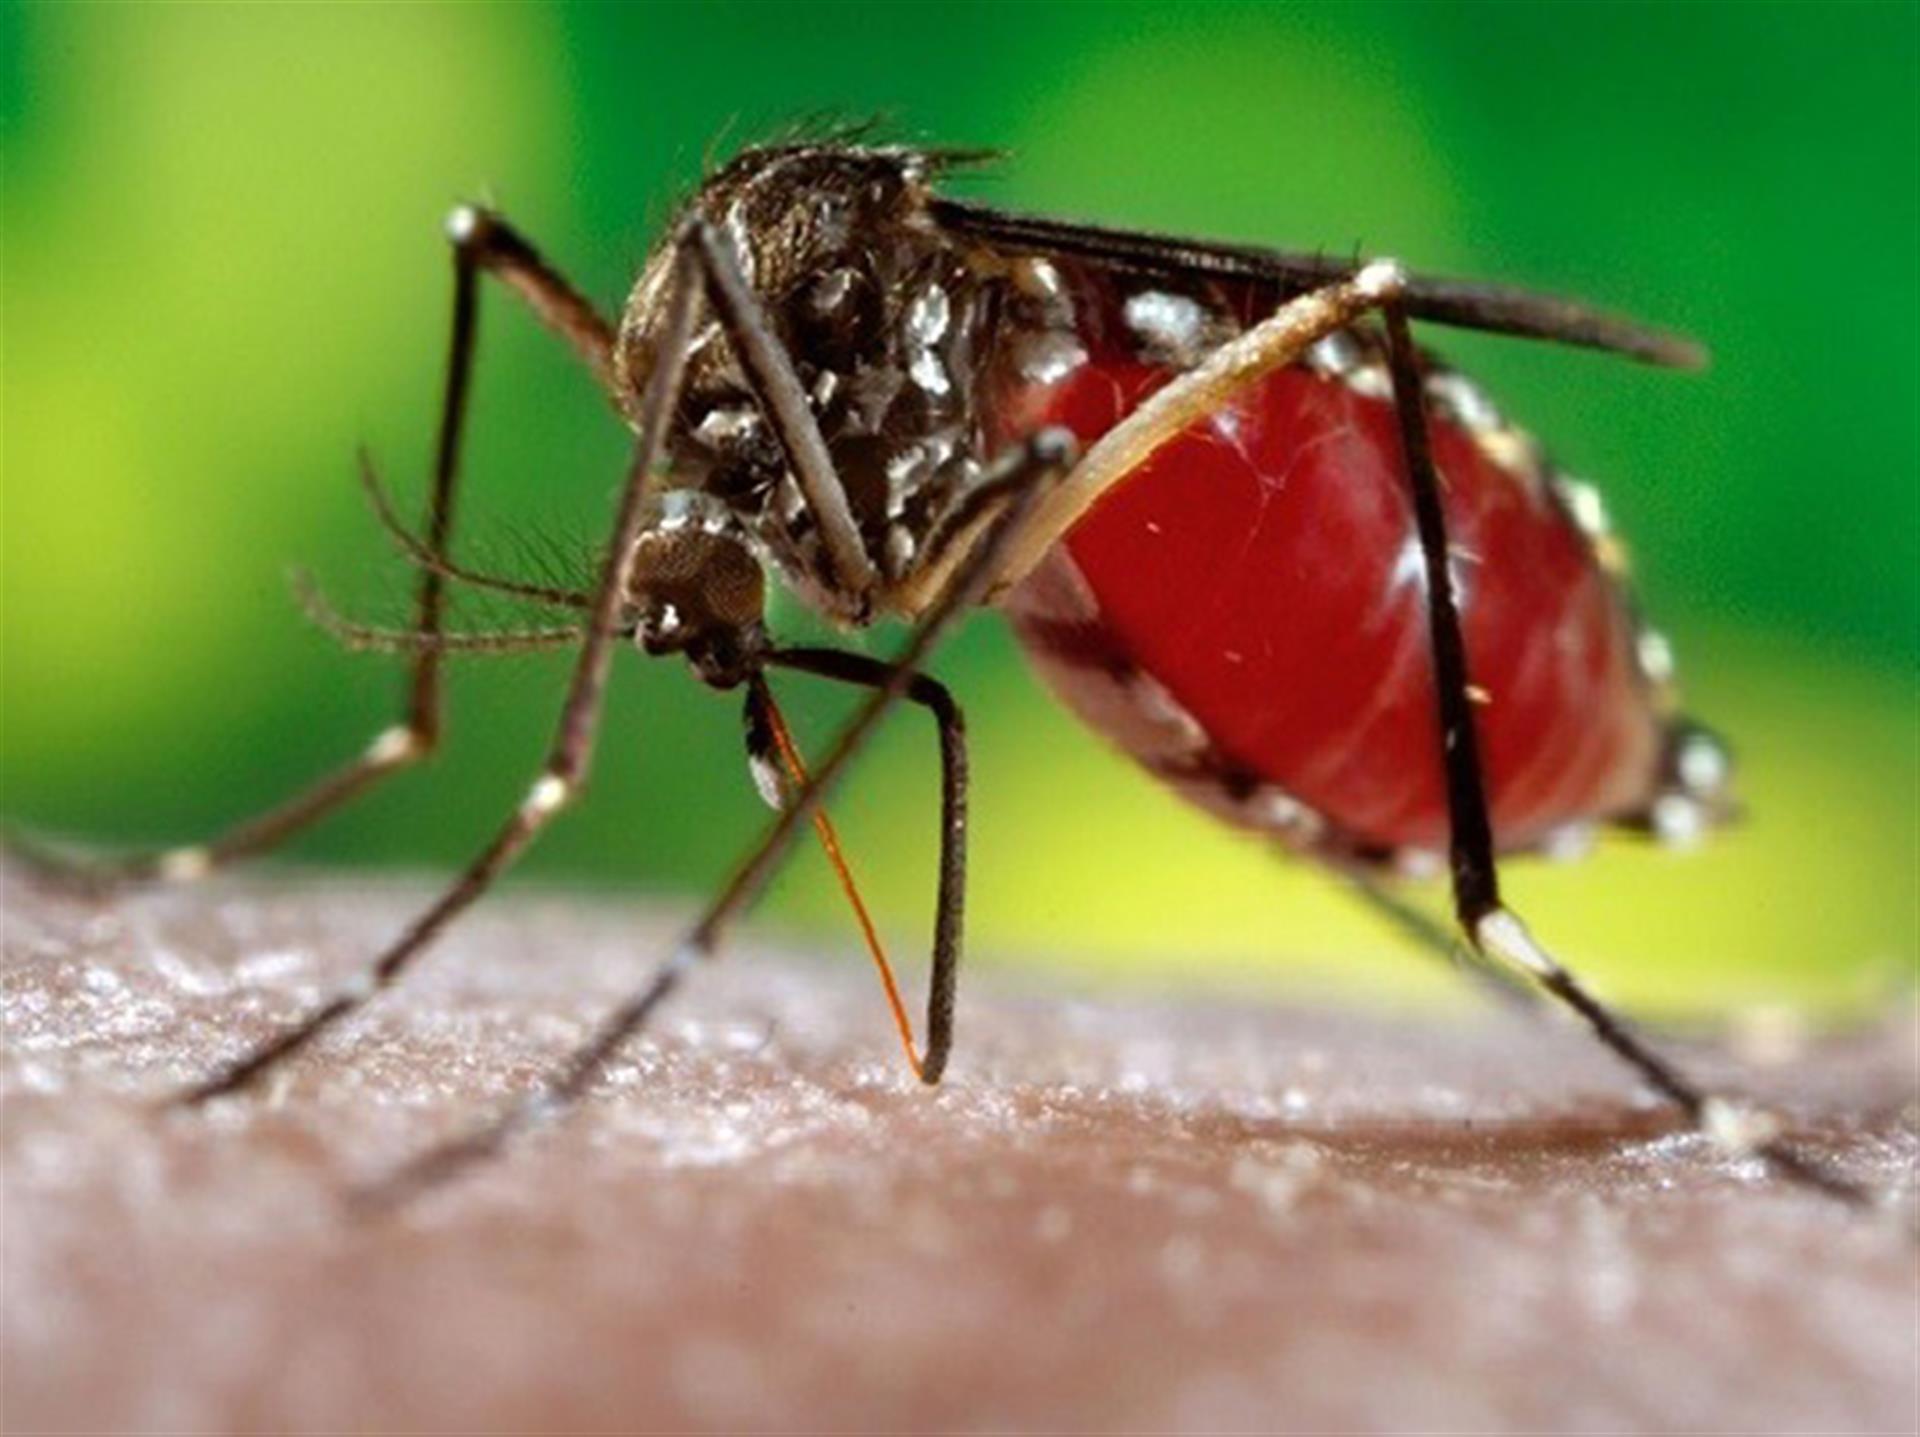  Ιός του Δυτικού Νείλου - Οδηγίες ΚΕΕΛΠΝΟ για προστασία από τα κουνούπια